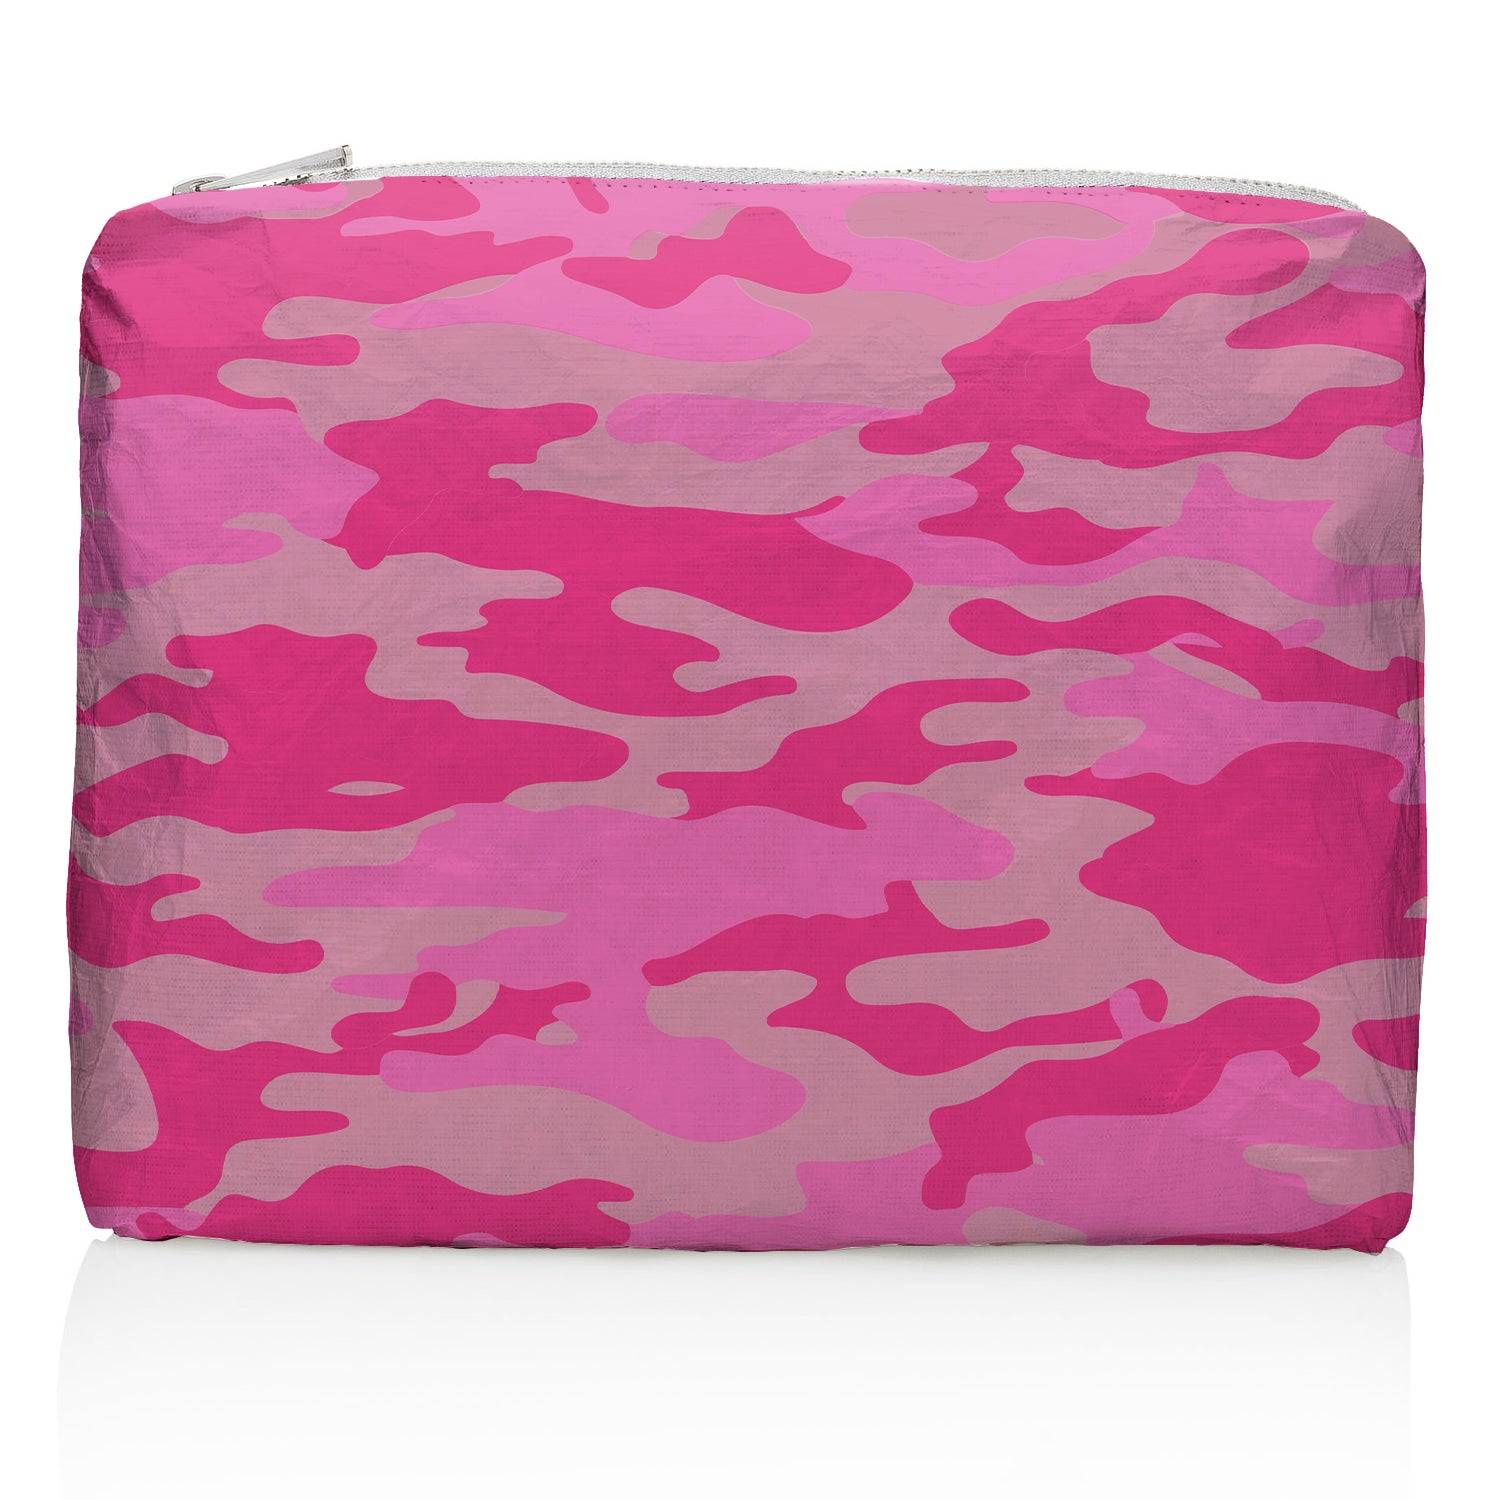 Medium Zipper Pack in Pink Camo